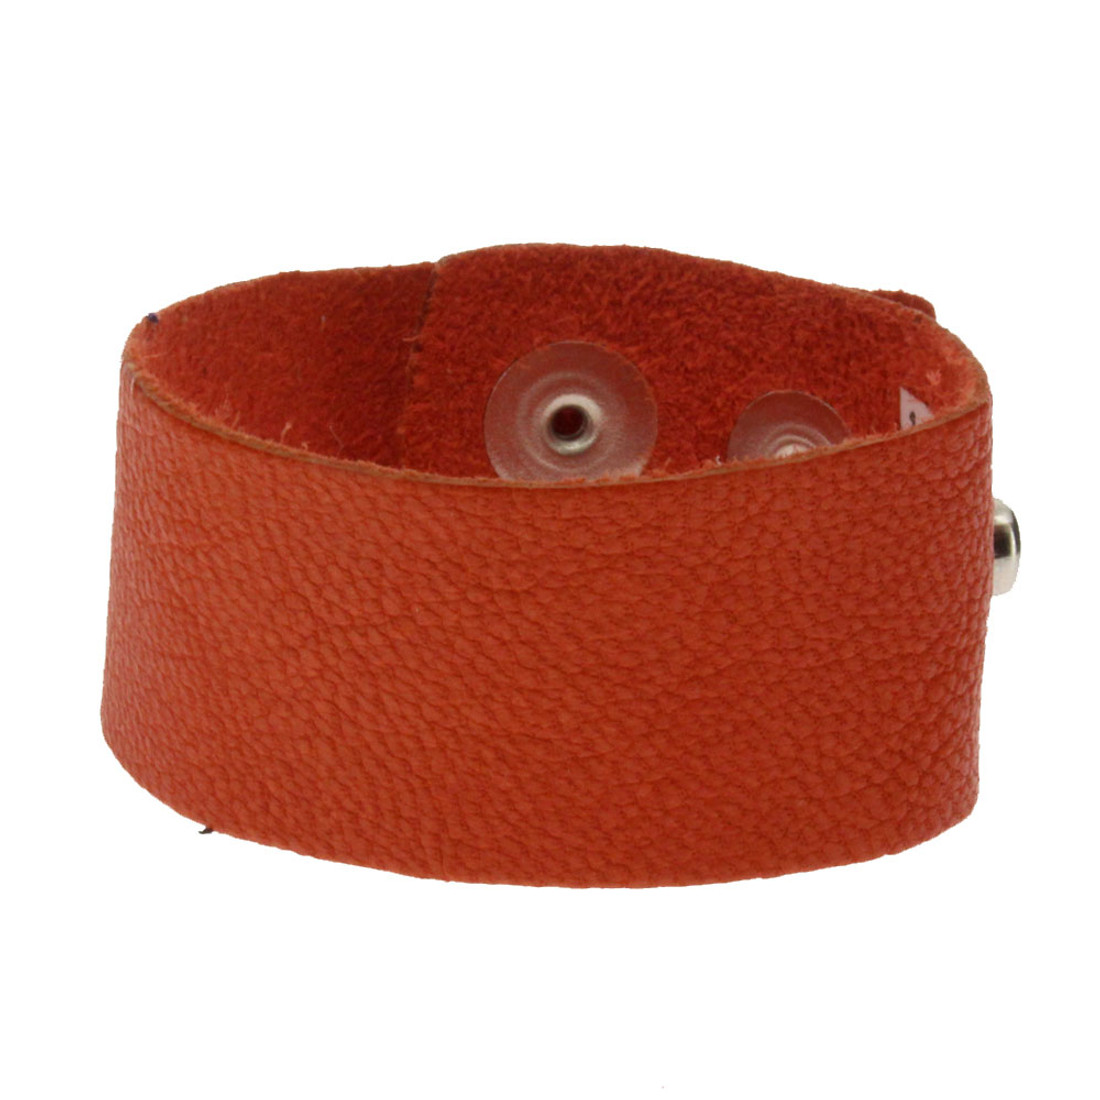 Orange leather cuff bracelet.